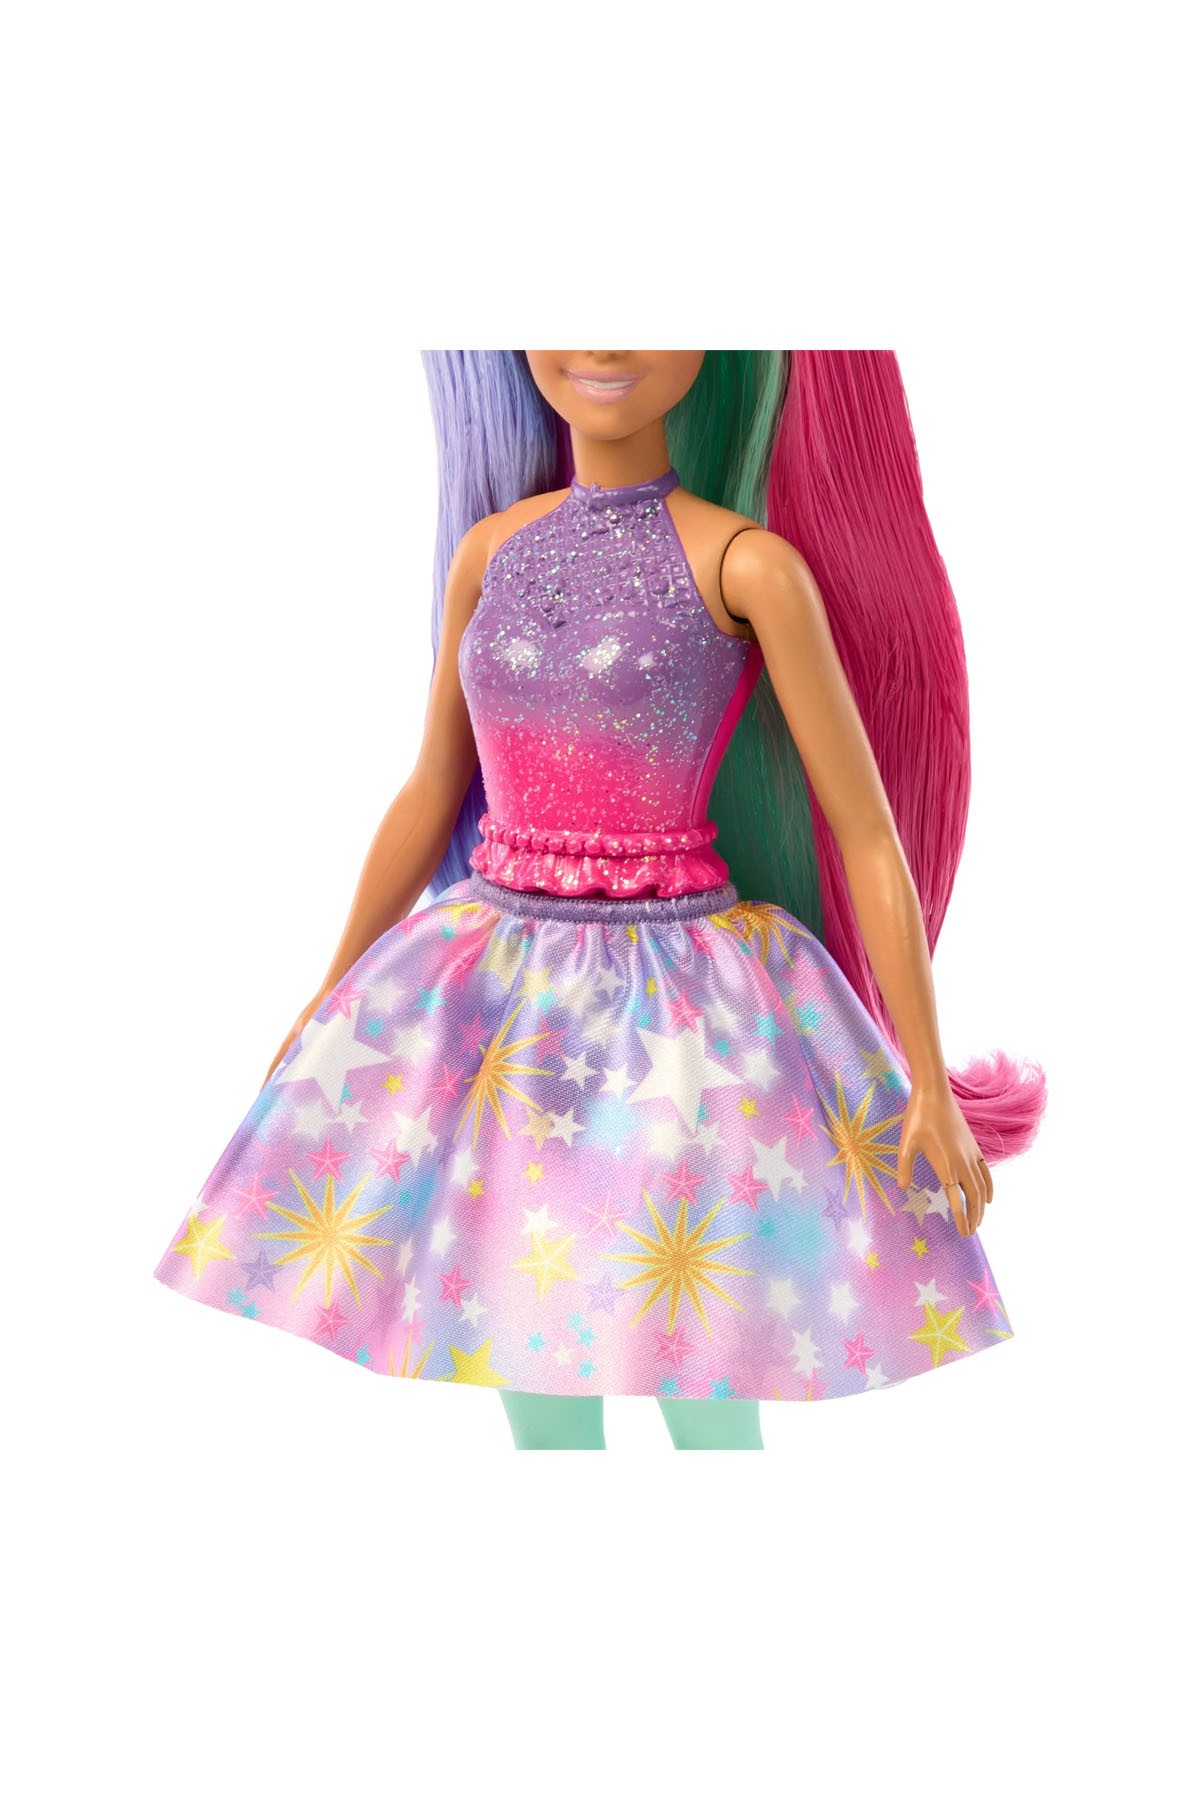 Barbie A Touch Of Magic Karakter Bebekler HLC35